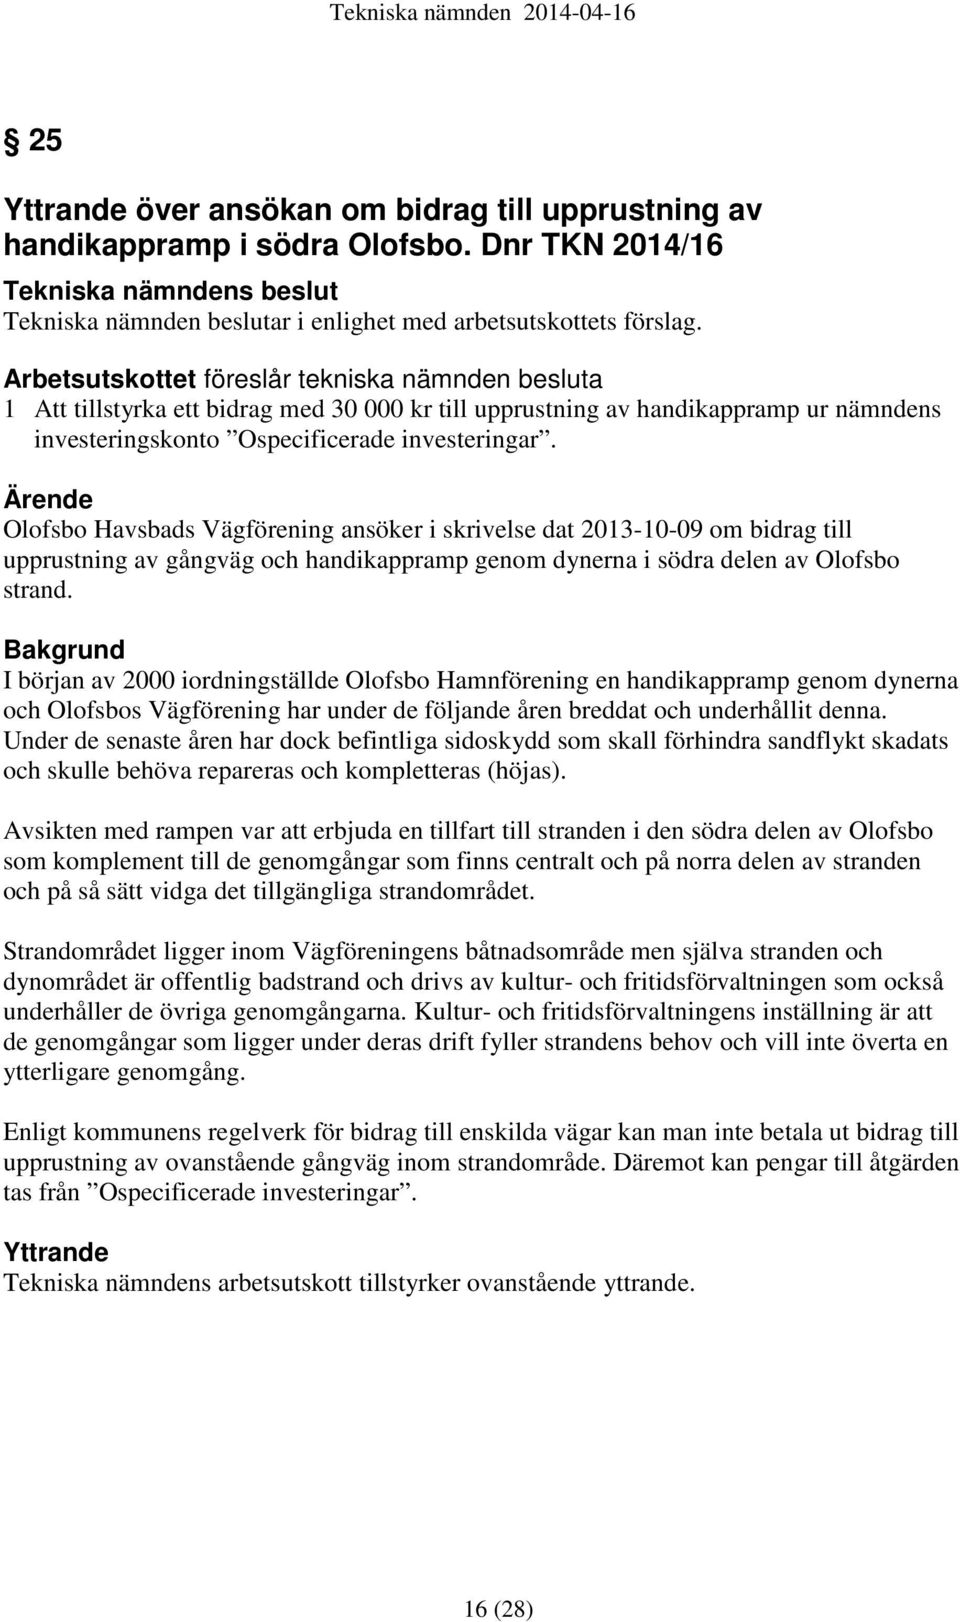 Ärende Olofsbo Havsbads Vägförening ansöker i skrivelse dat 2013-10-09 om bidrag till upprustning av gångväg och handikappramp genom dynerna i södra delen av Olofsbo strand.